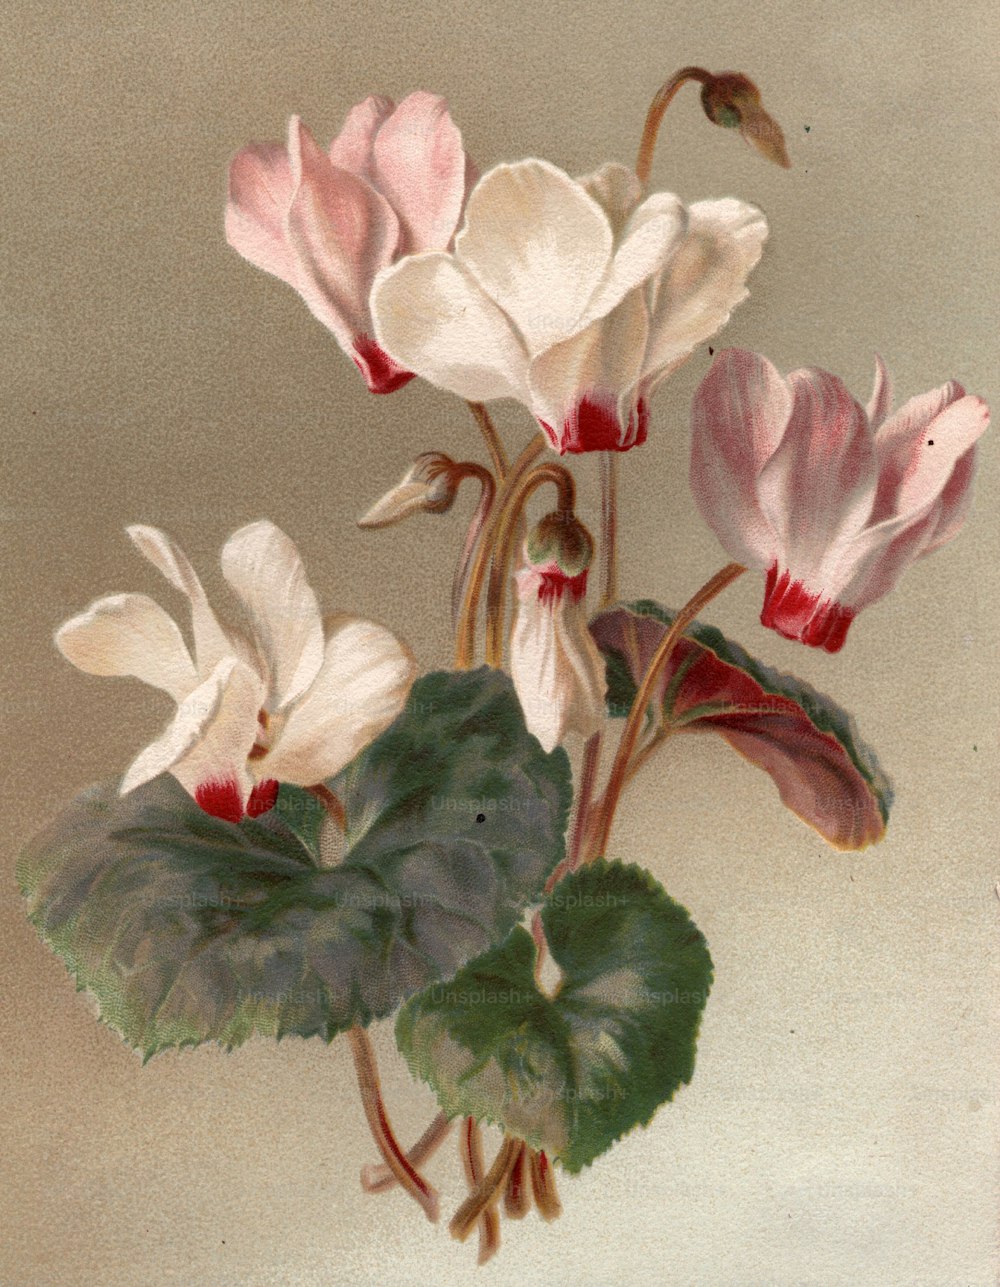 um 1800: Blumen der Familie der Alpenveilchengewächse.  (Foto von Hulton Archive / Getty Images)